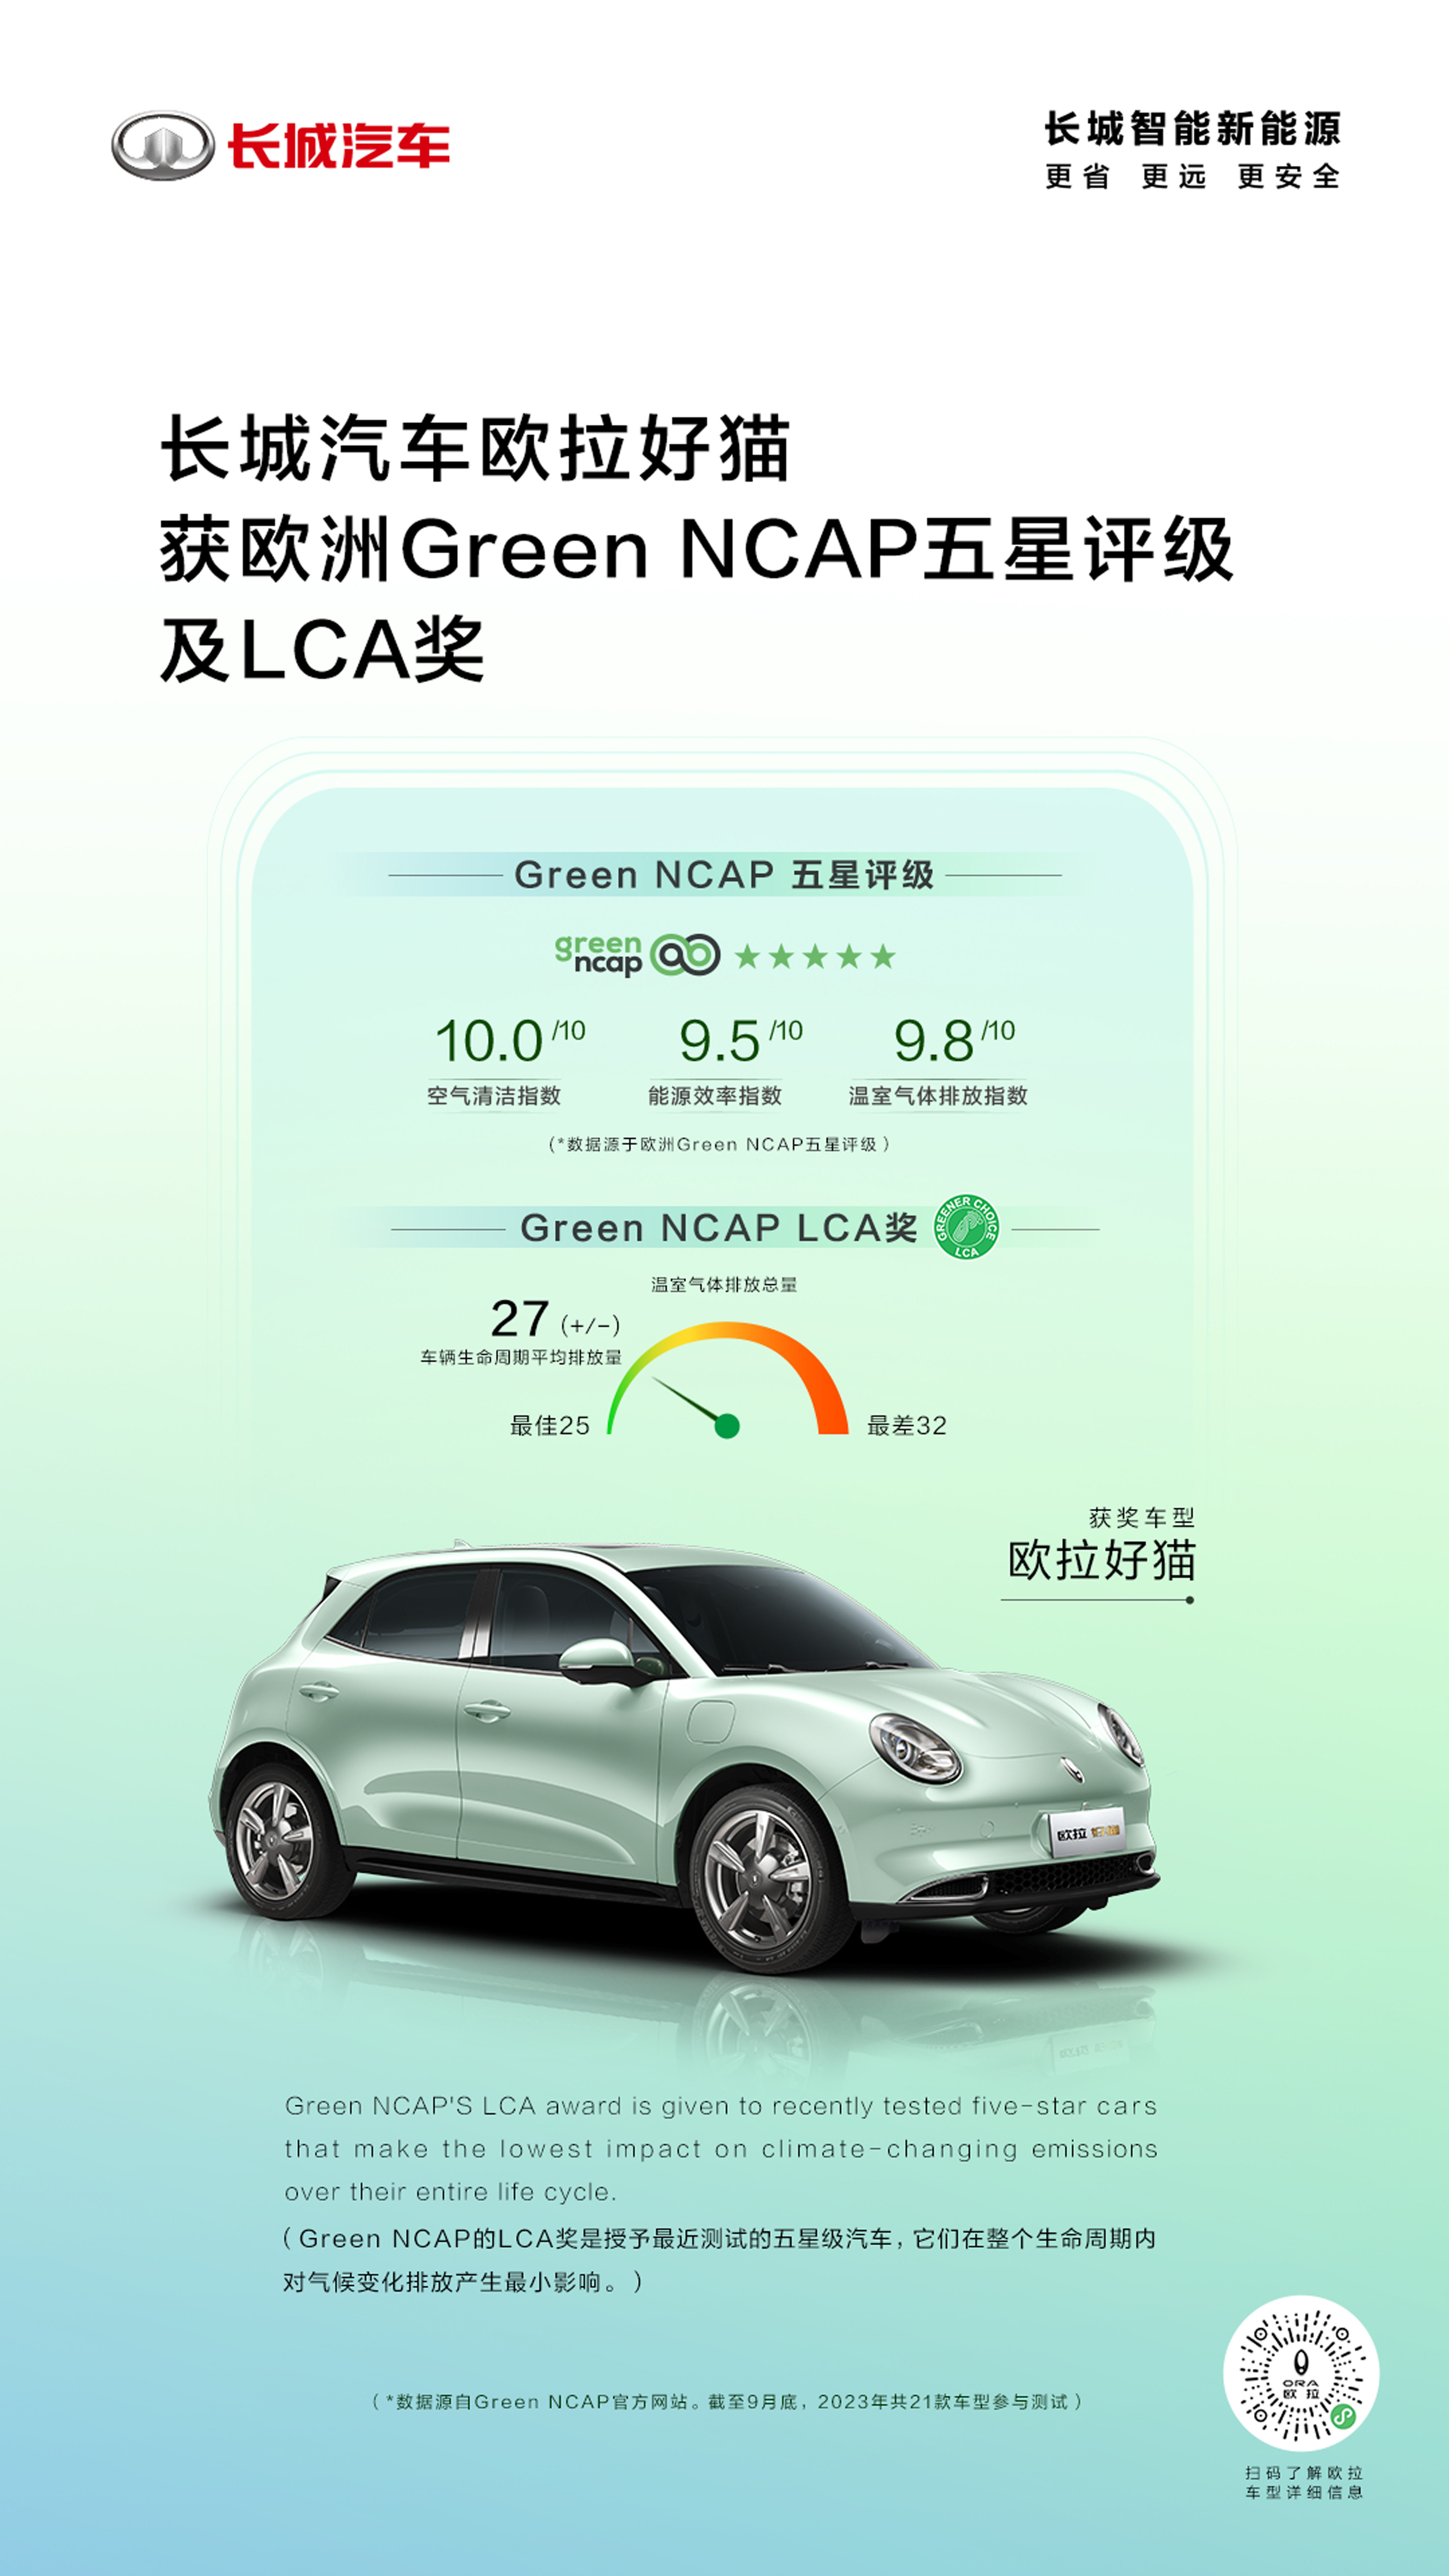 唯一获颁欧洲Green NCAP LCA奖的中国汽车品牌 长城汽车树立“绿色可持续”价值典范